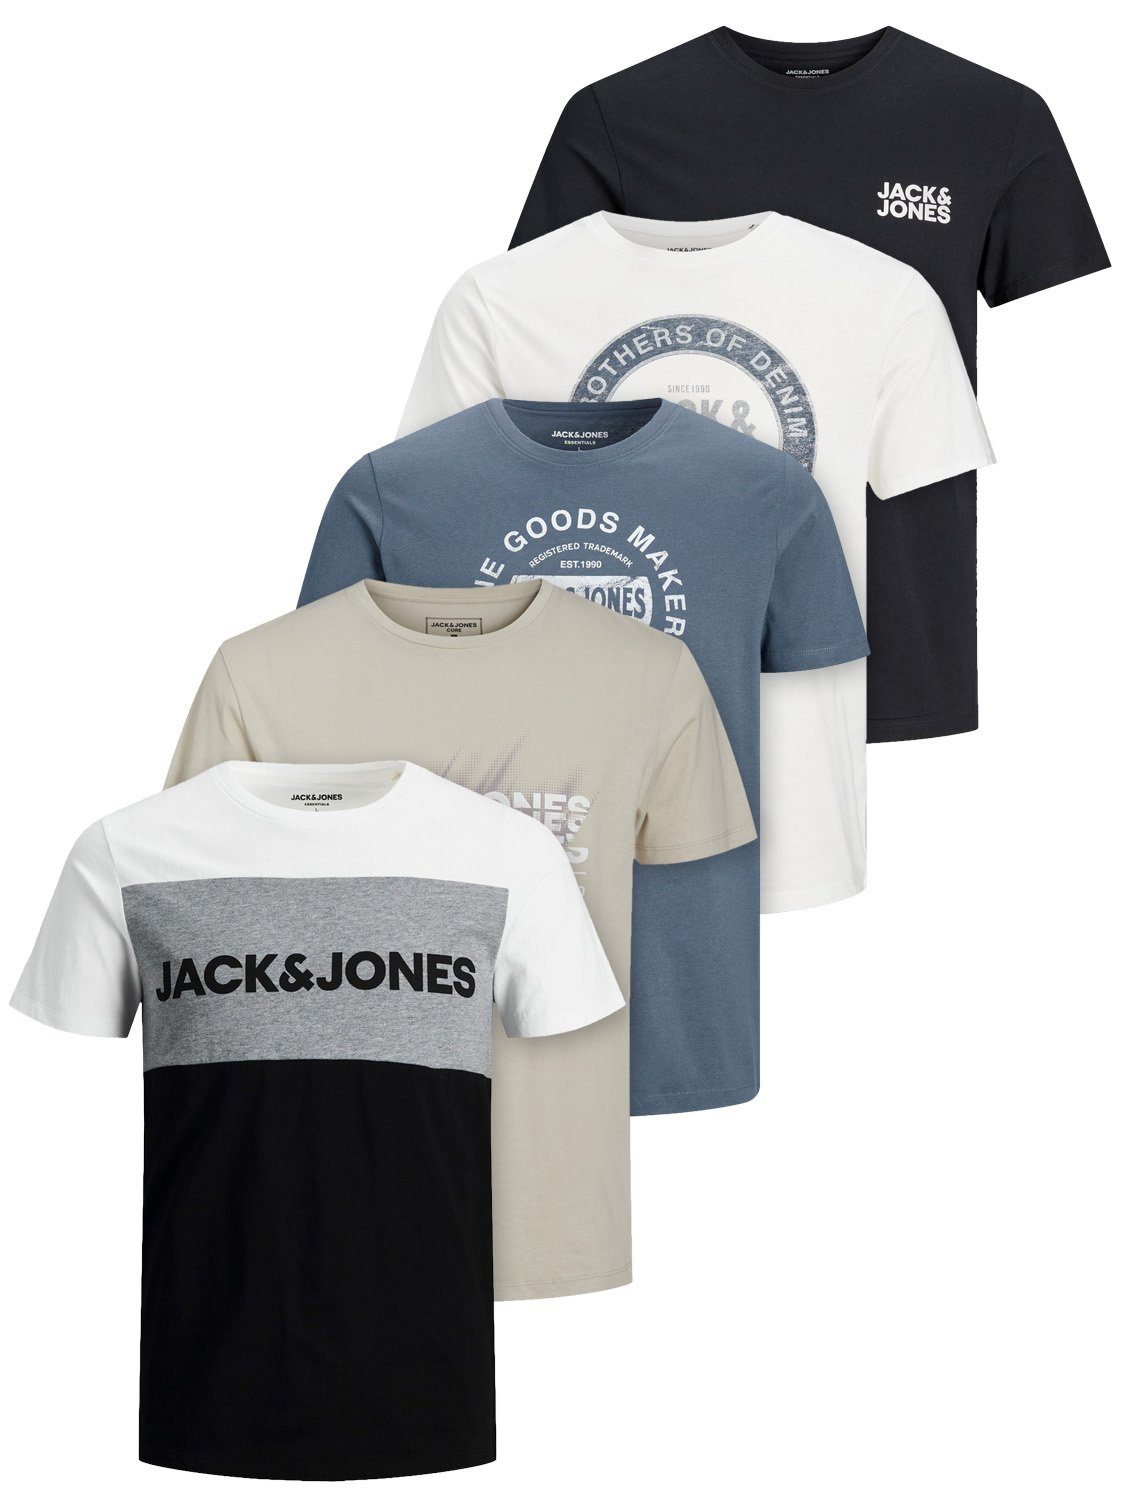 Jack & Jones Print-Shirt Print T-Shirt Vel (5-tlg) 5 T-Shirts in verschiedenen Farben und unterschiedlichen Motiven Mix11